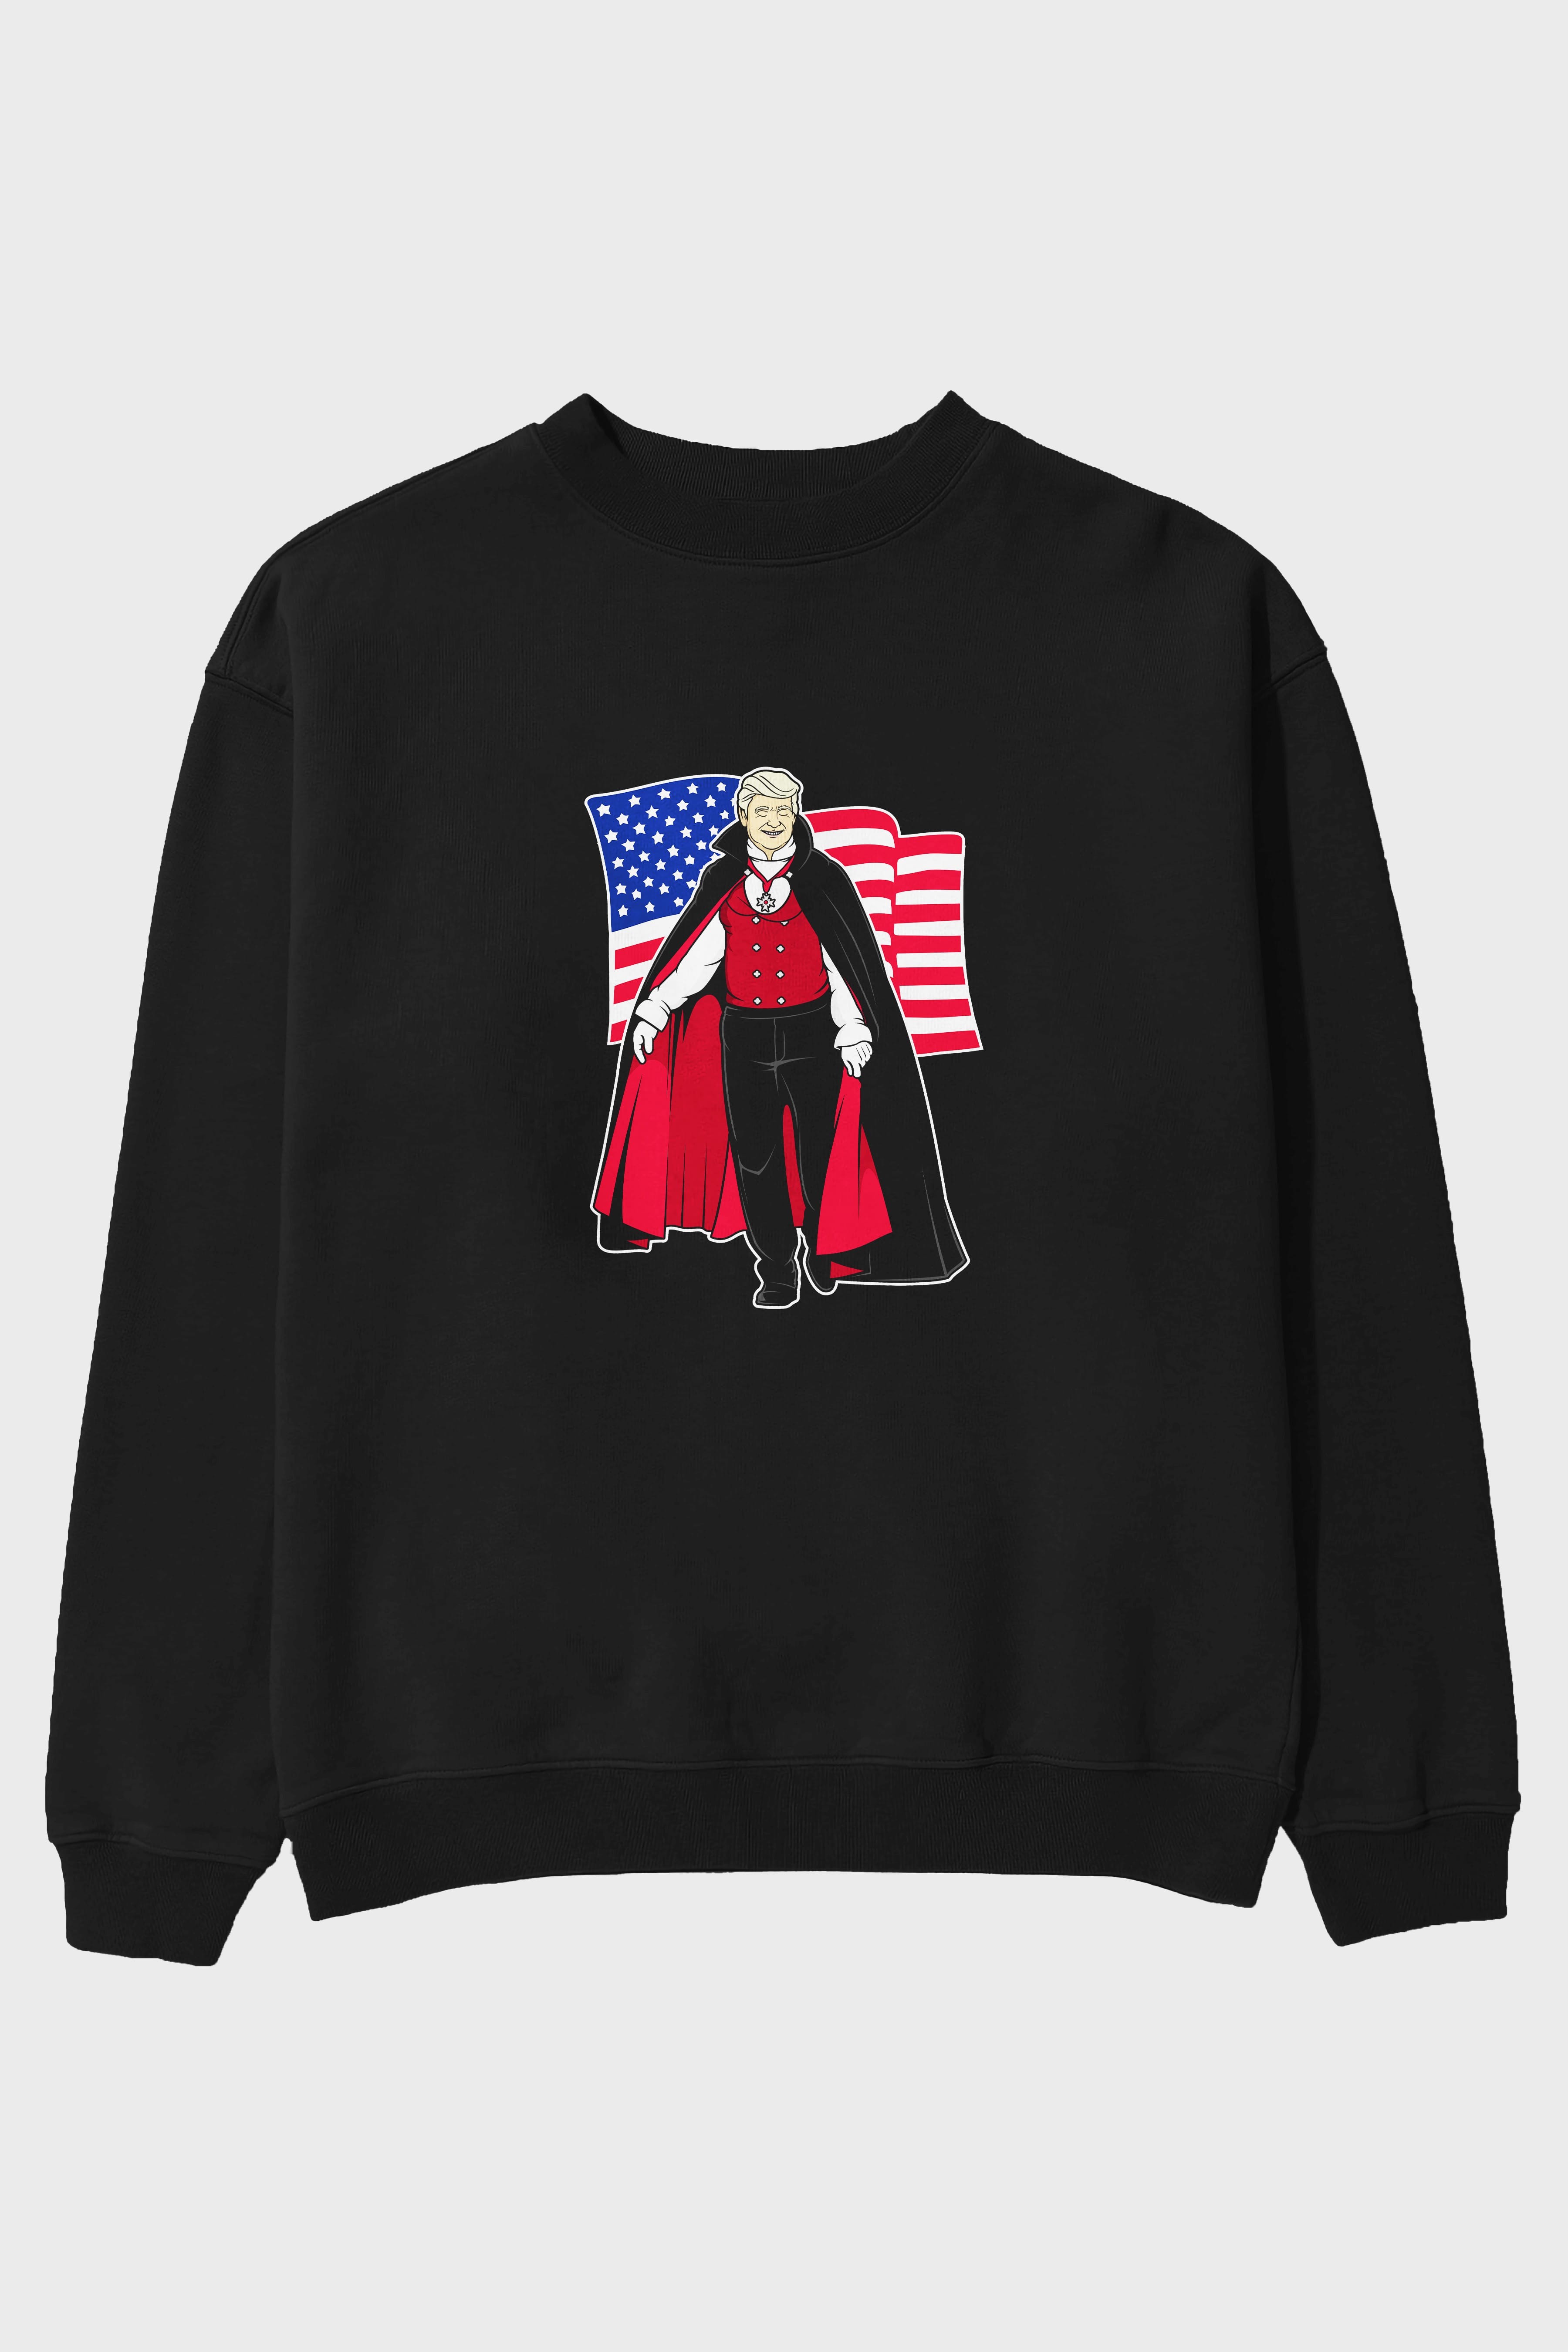 Trump Dracula Ön Baskılı Oversize Sweatshirt Erkek Kadın Unisex